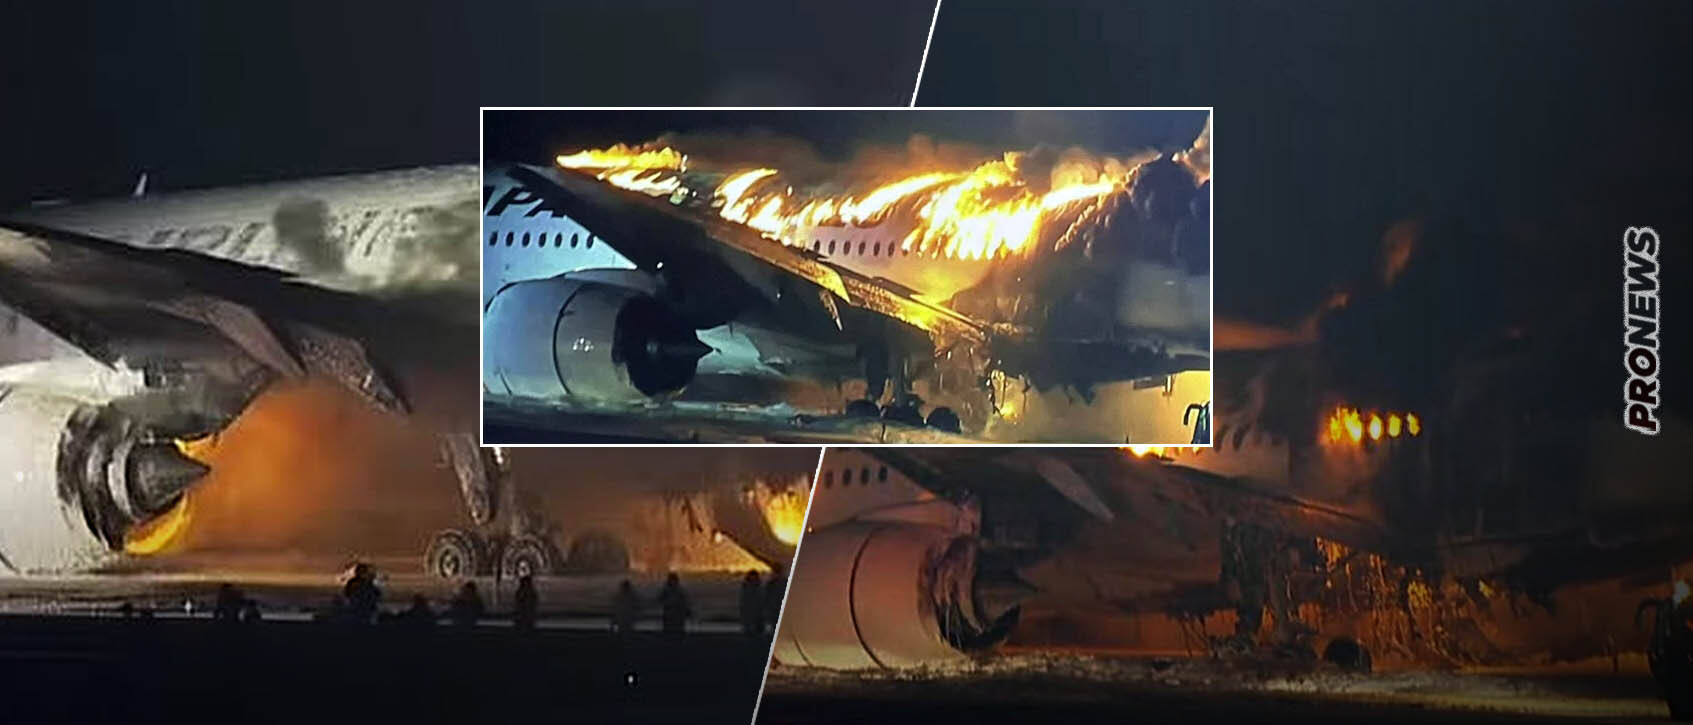 Τόκιο: Στις φλόγες τυλίχθηκε αεροσκάφος της Japan Airlines στο αεροδρόμιο! – Επιβάτες τρέχουν να σωθούν (βίντεο)